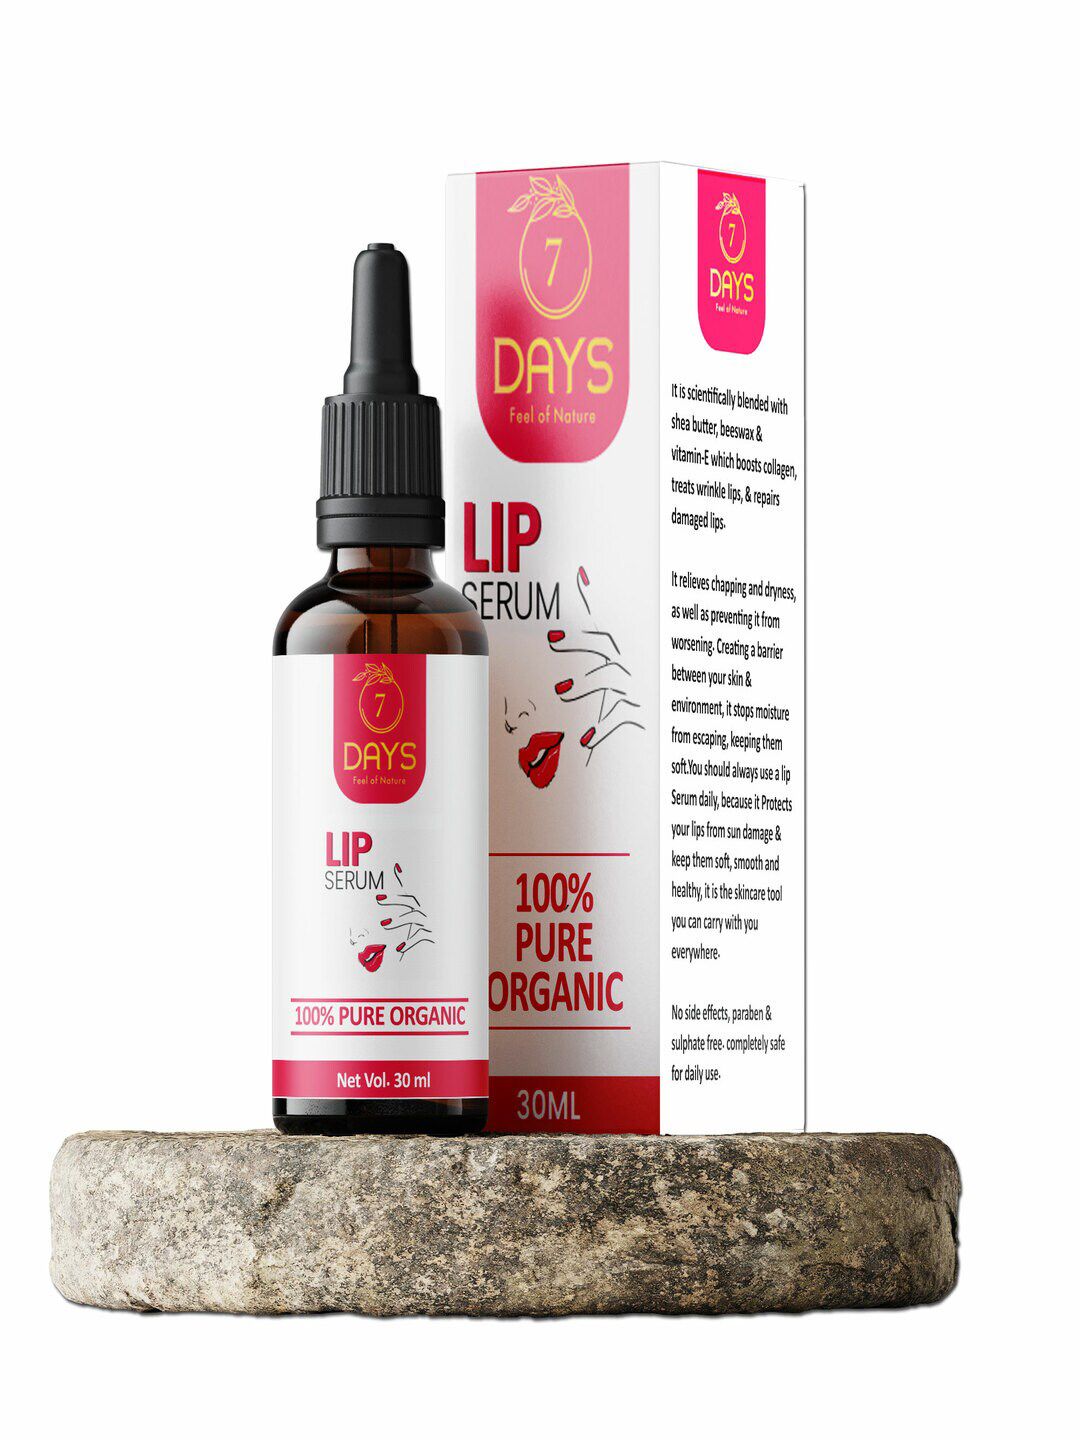 7 DAYS 100% Pure Organic Lip Serum - 30ml Price in India